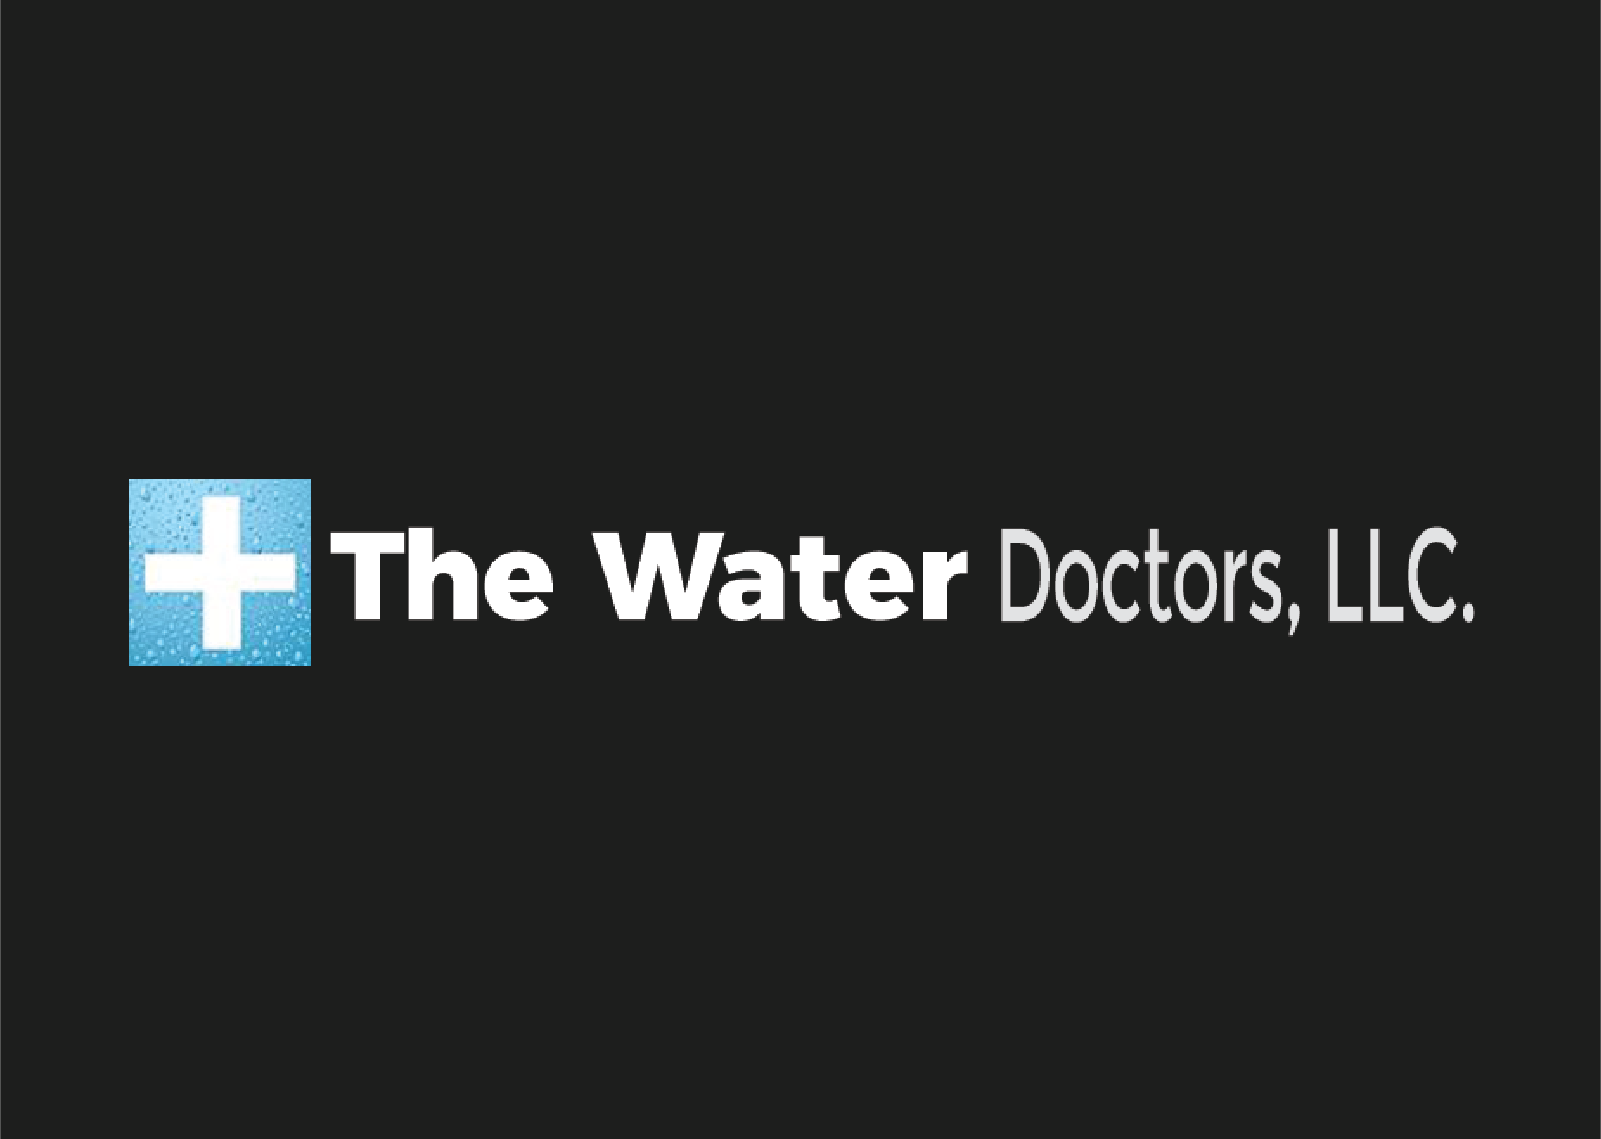 The Water Doctors, LLC